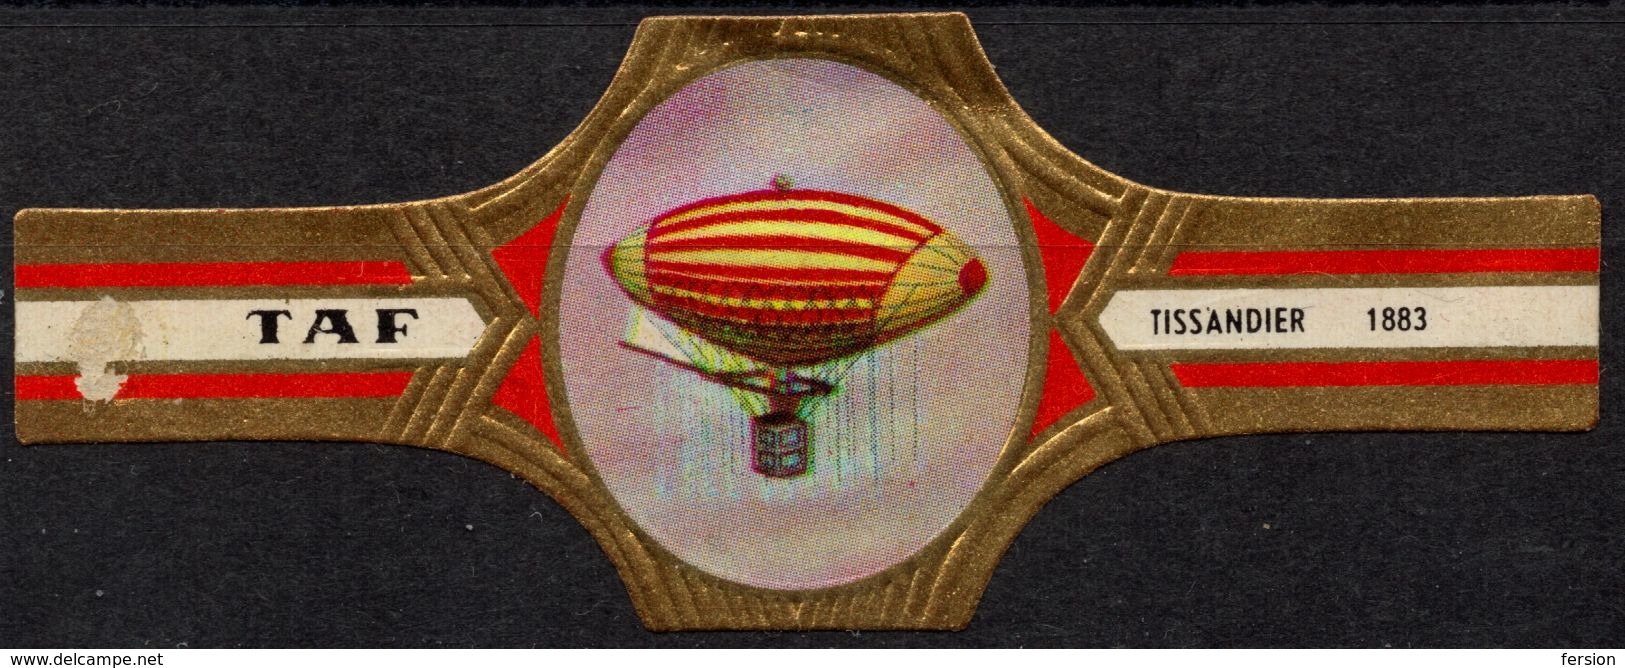 Belgium Belgique - TAF - Tissandier Ballon Zeppelin - CIGAR Label Vignette - Etiquettes